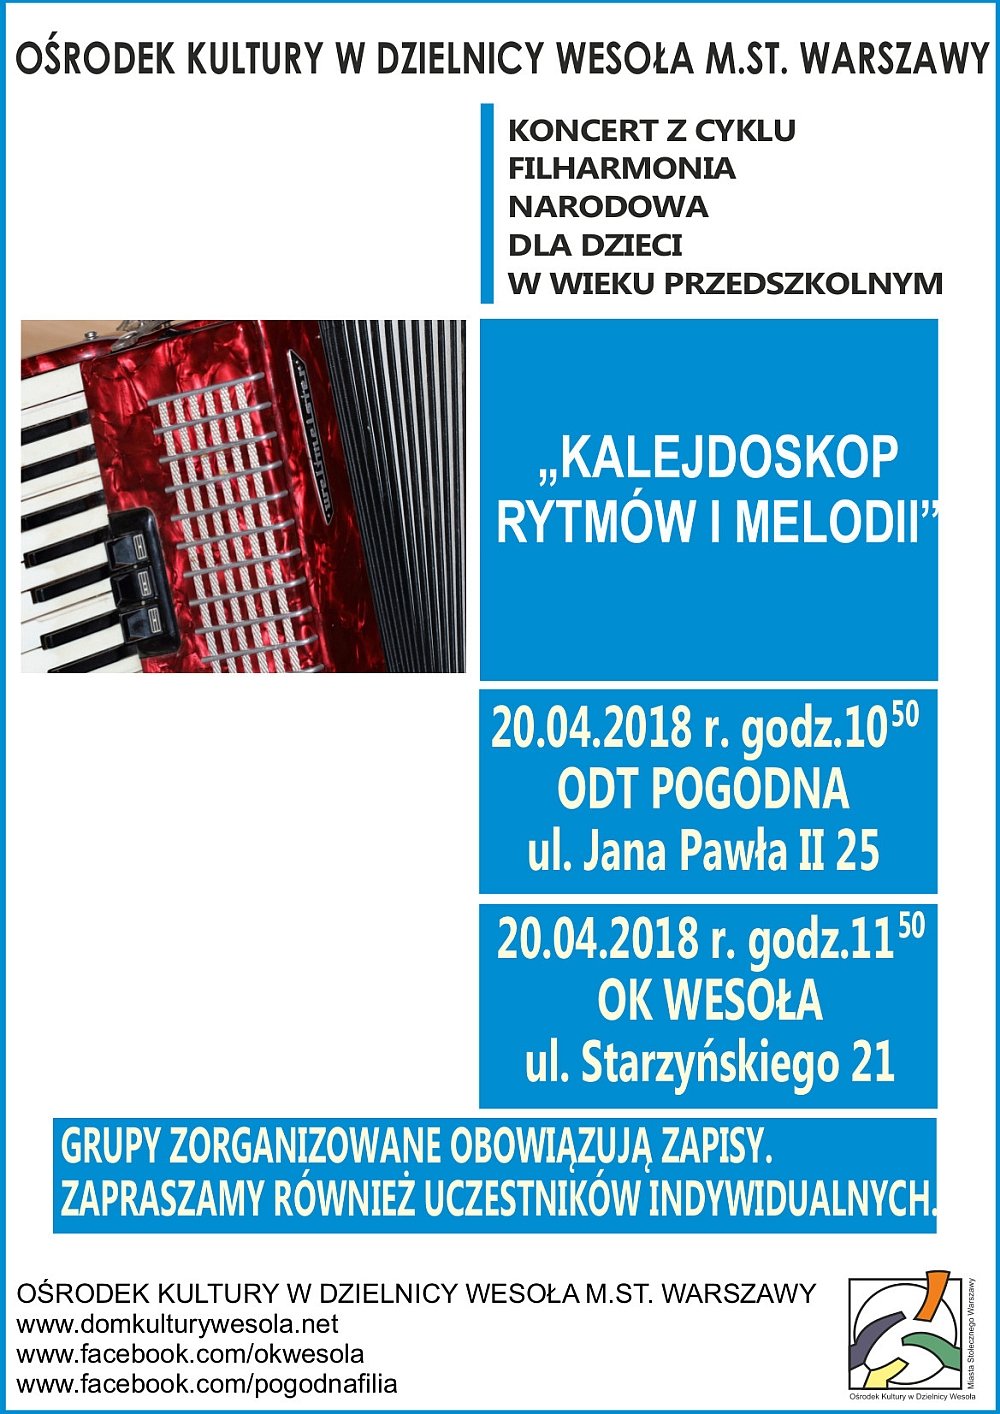 Kalejdoskop rytmów i melodii - koncert Filharmonii Narodowej w Warszawie